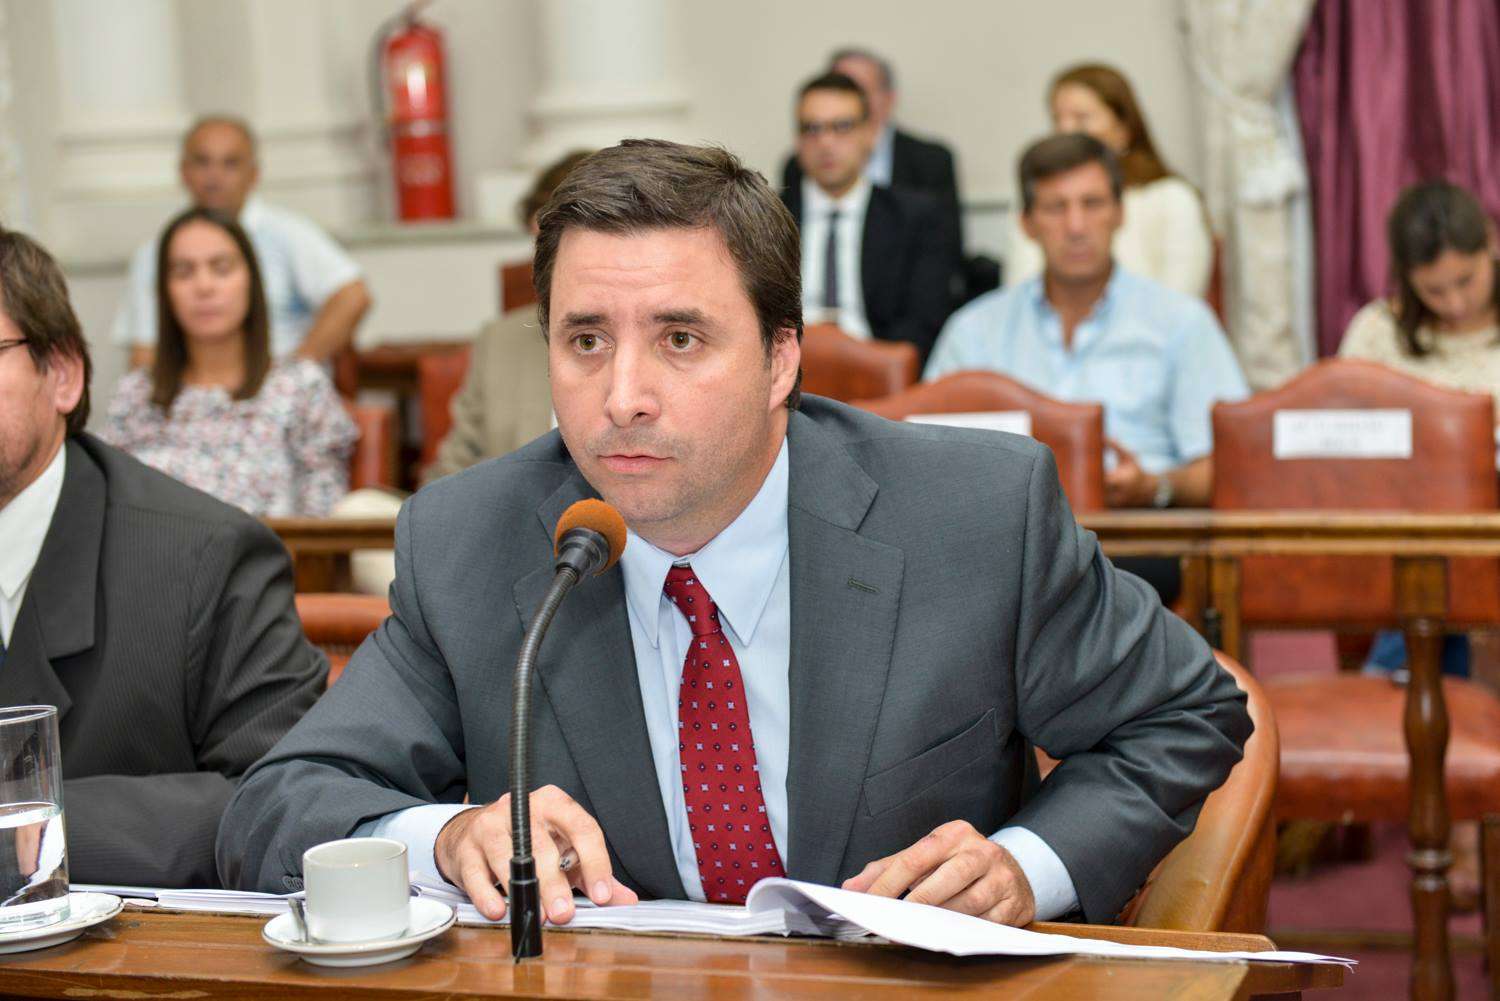 El senador Mattiauda respondió a los cuestionamientos de Giano sobre la tarifa de luz en Entre Ríos